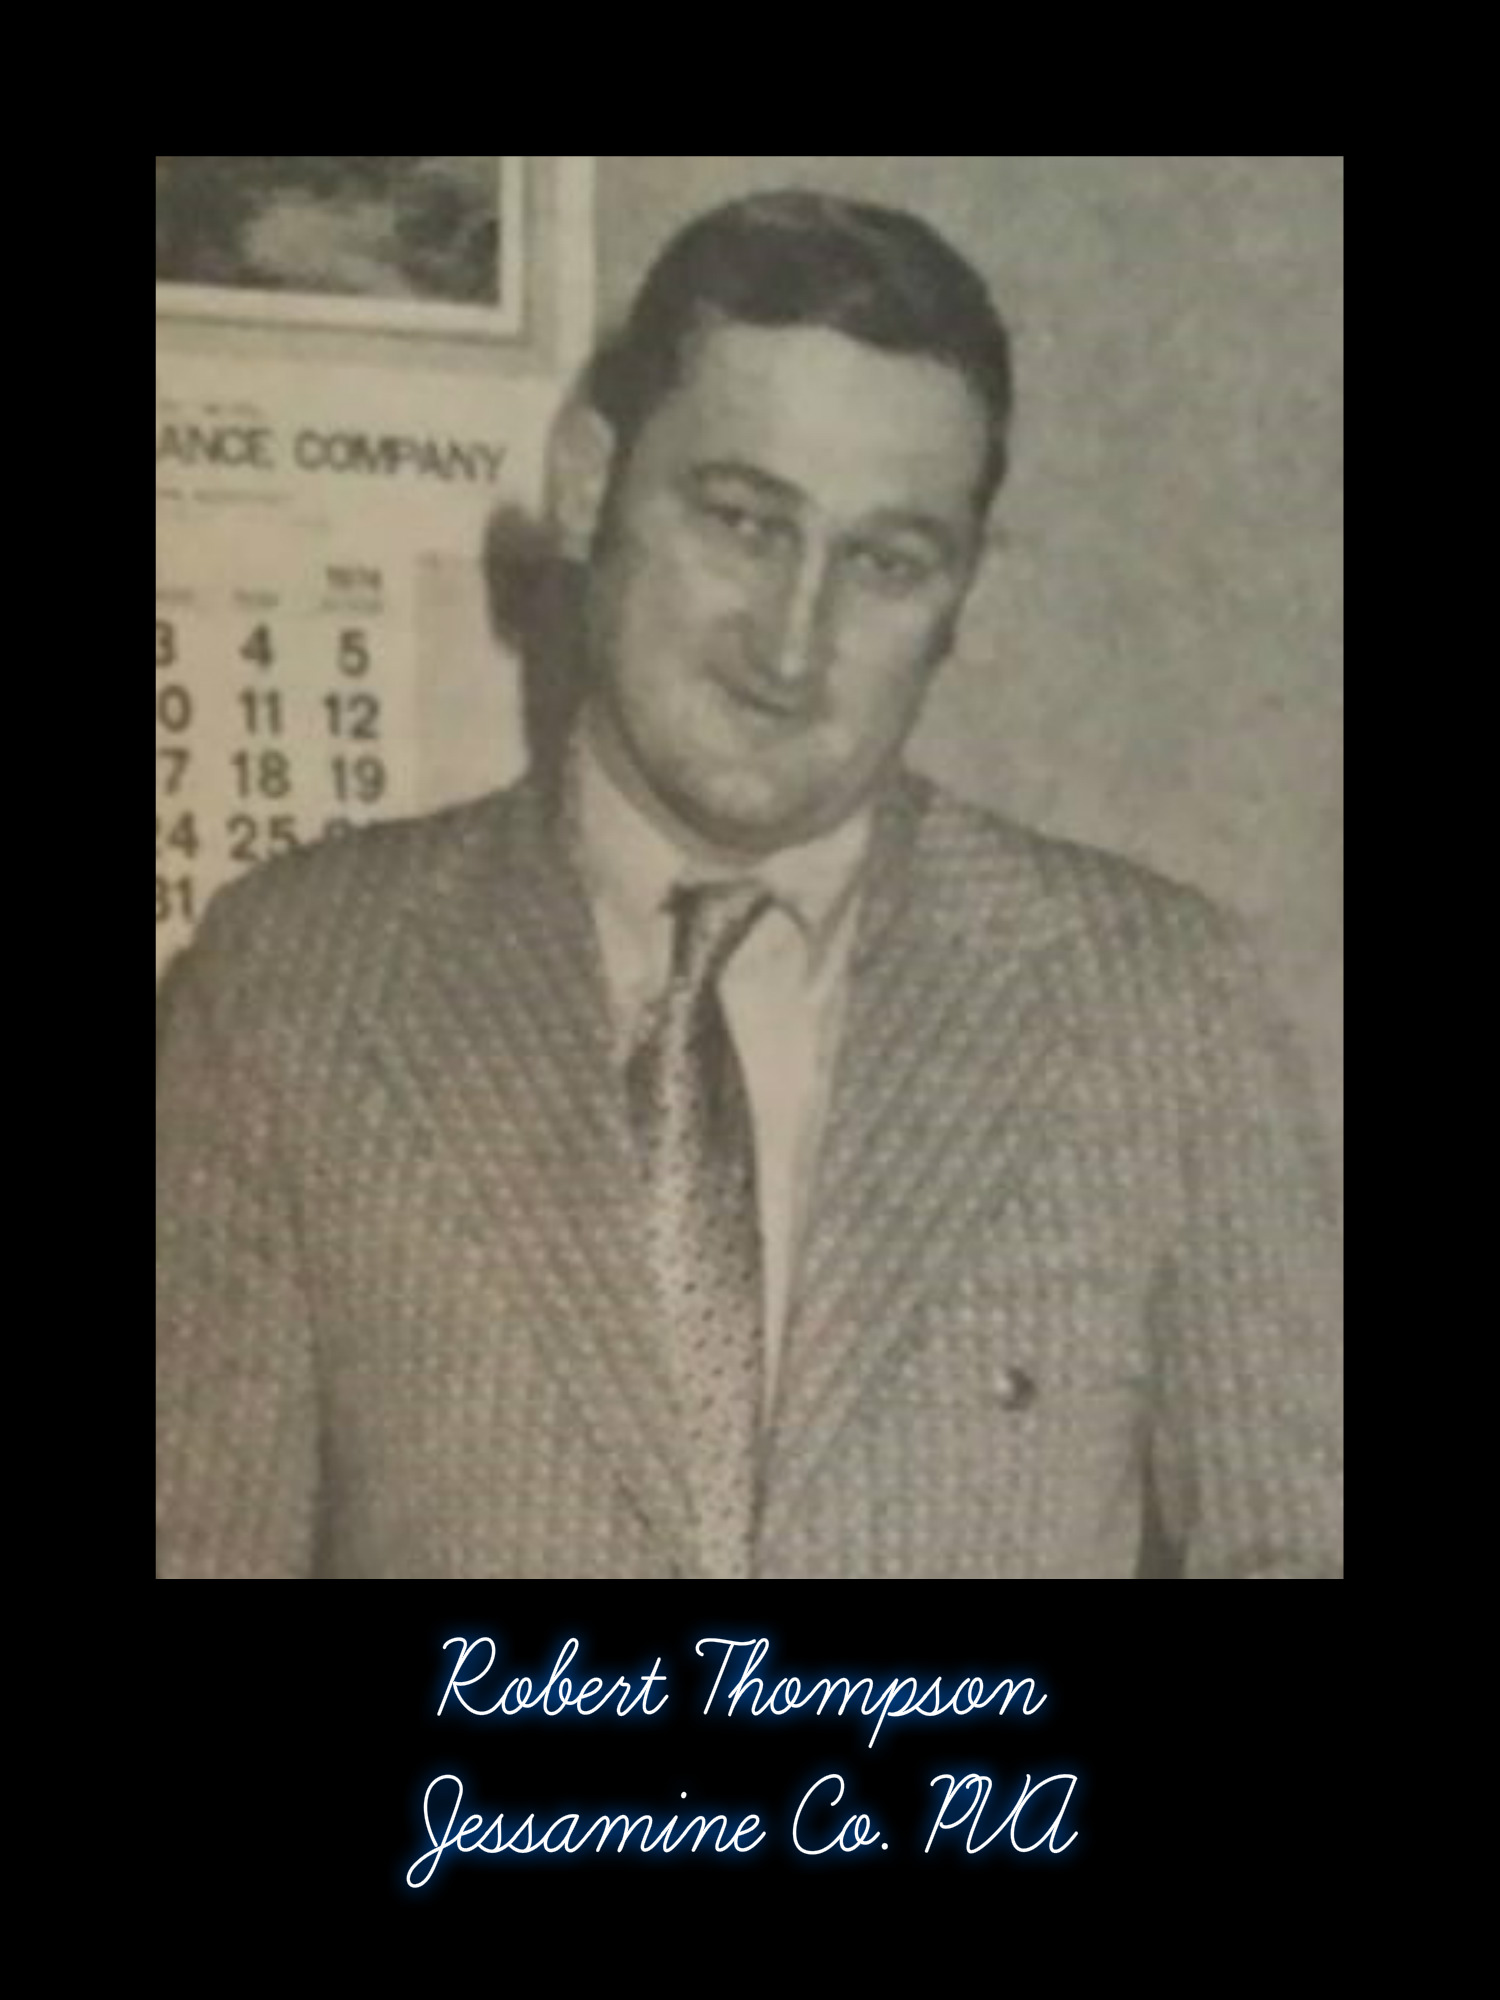 Robert Thompson, PVA - 10/22/16 - # 97